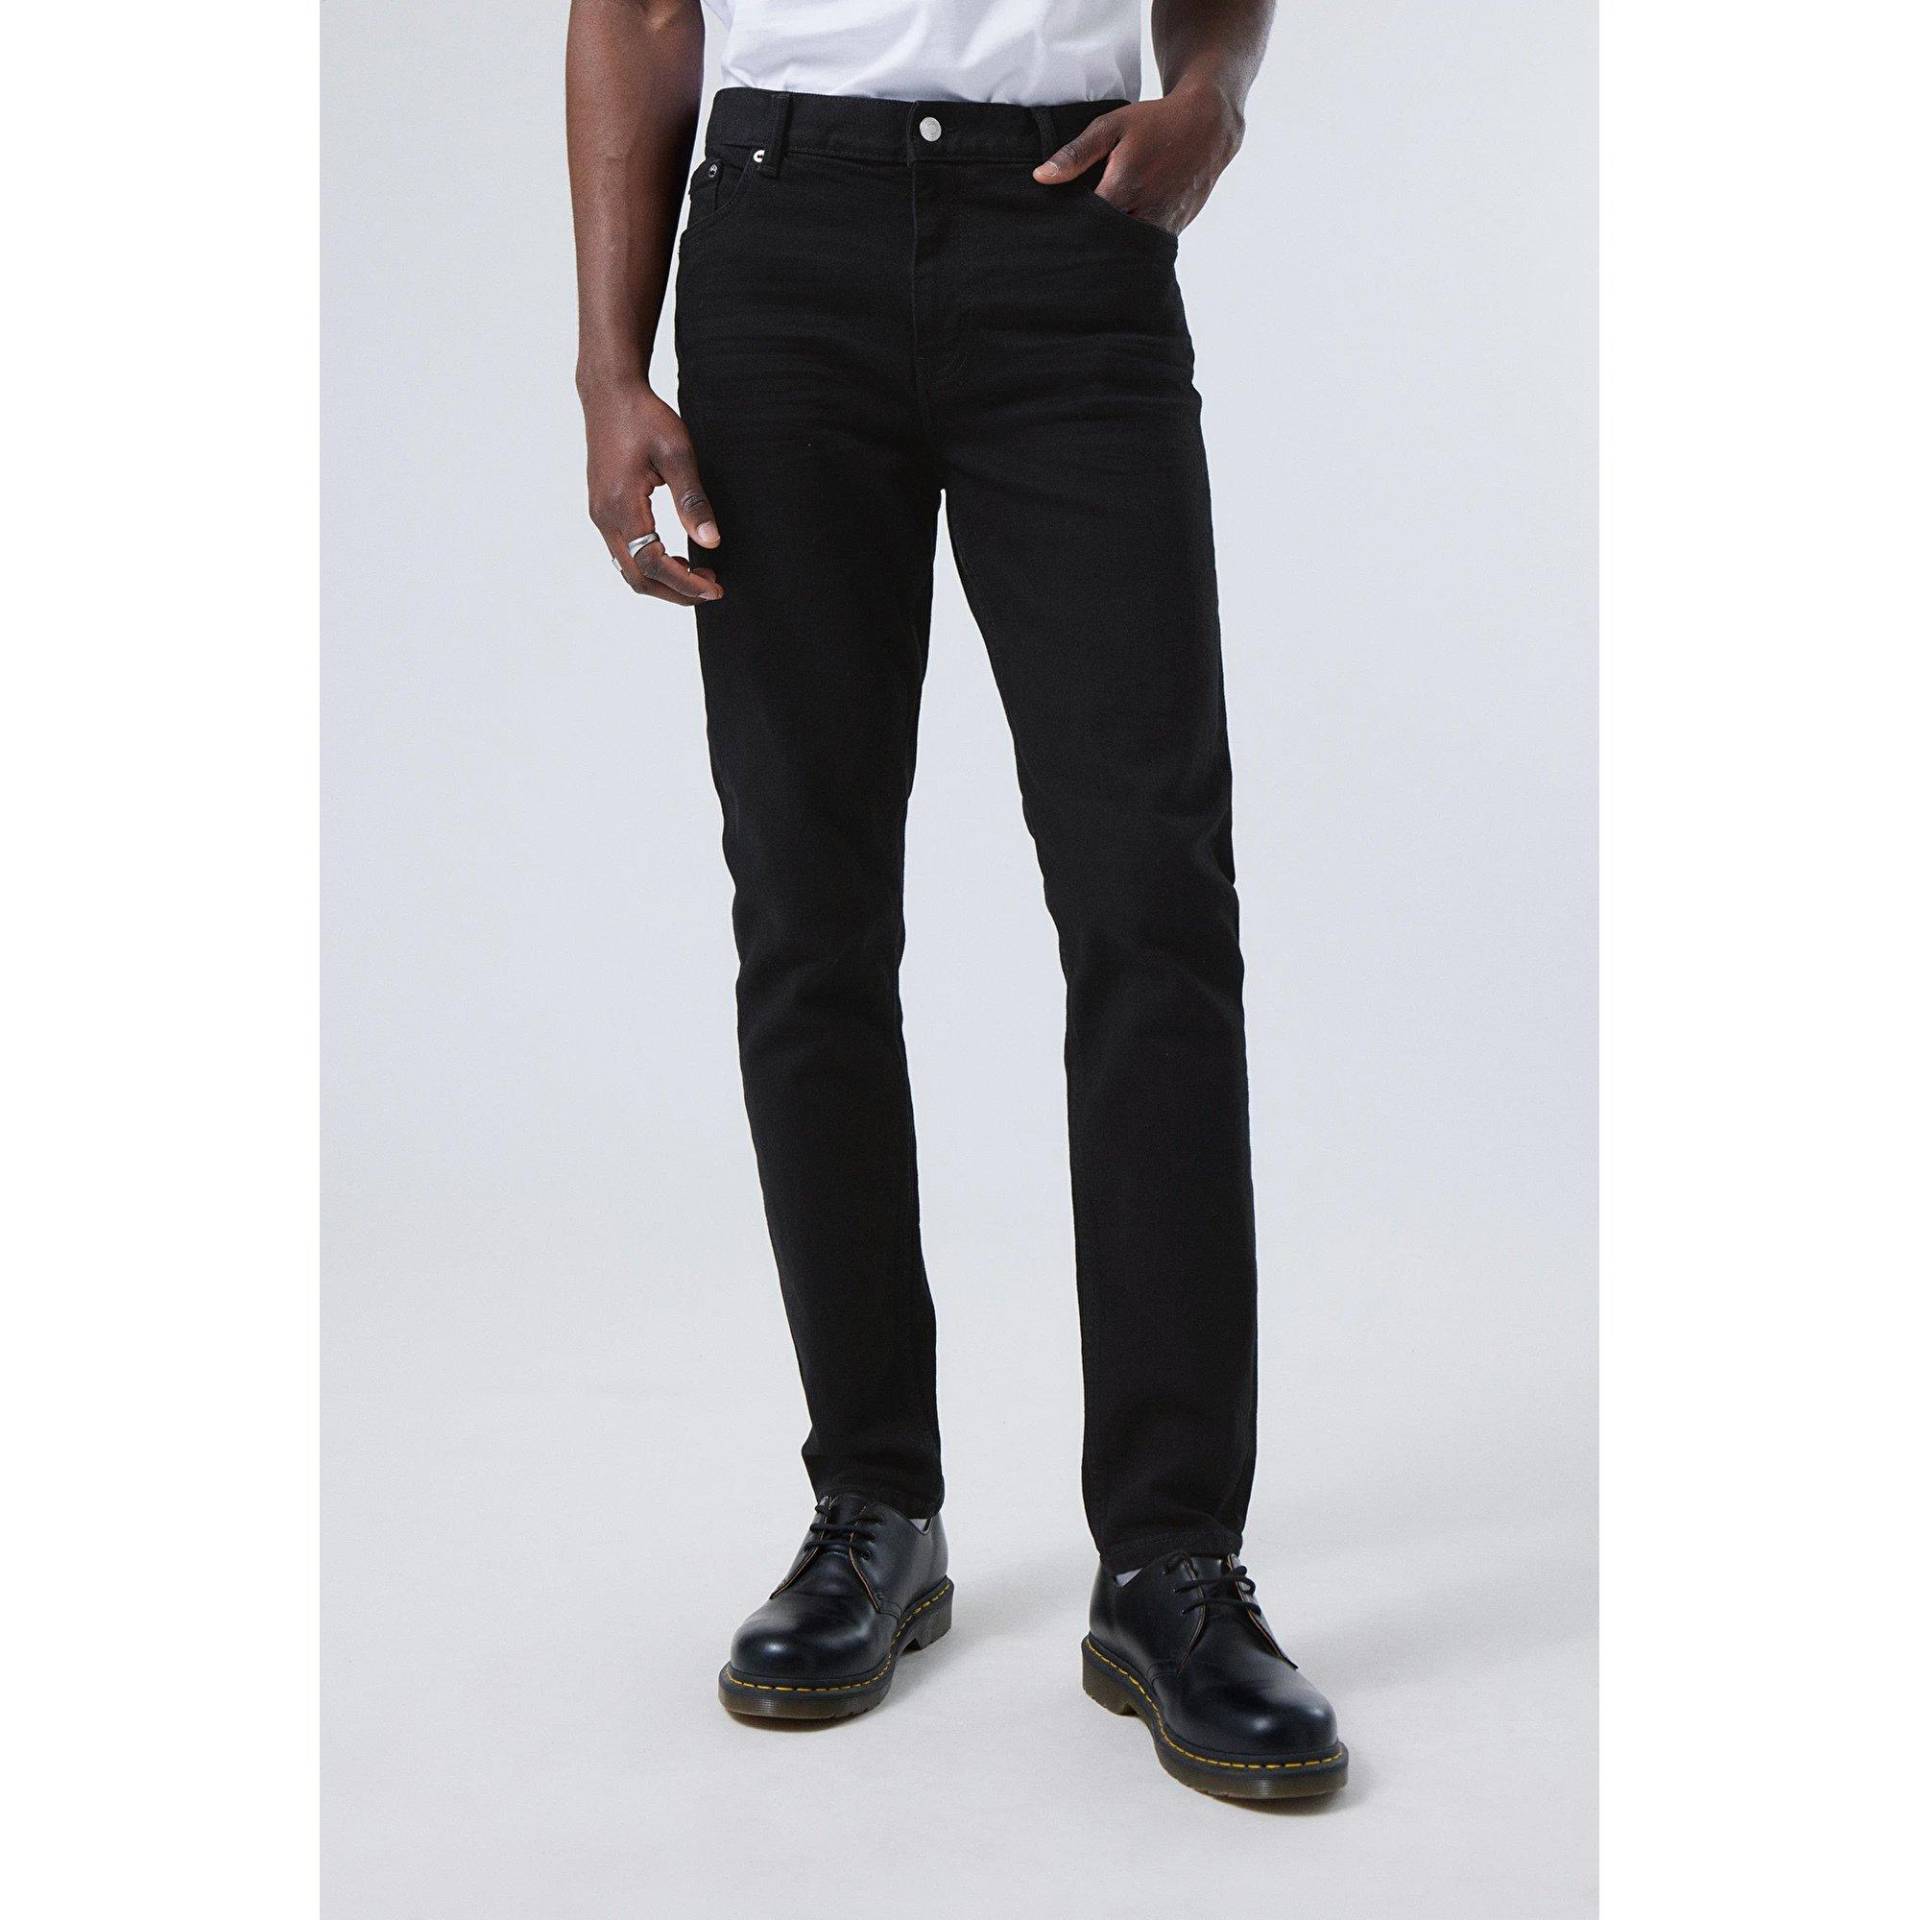 Jeans, Tapered Fit Herren Black L32/W32 von WEEKDAY